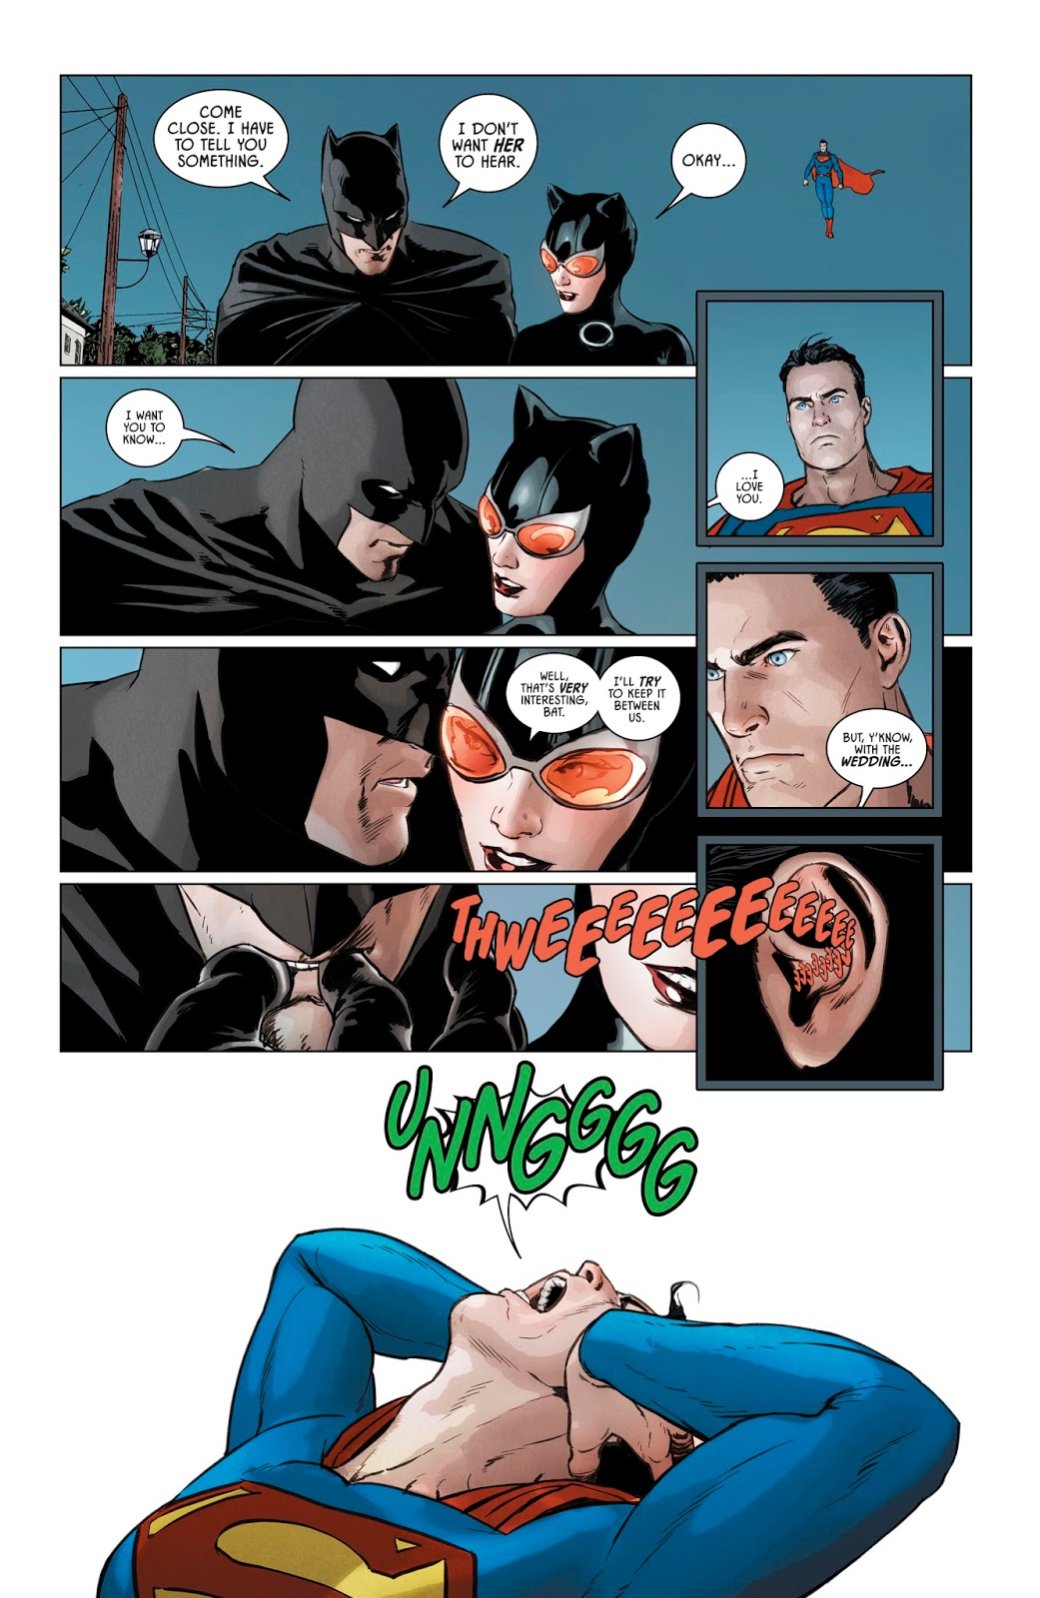 Галерея Ядовитый плющ захватила весь мир, и даже Бэтмен не может ничего с этим поделать. Как так вышло? - 3 фото